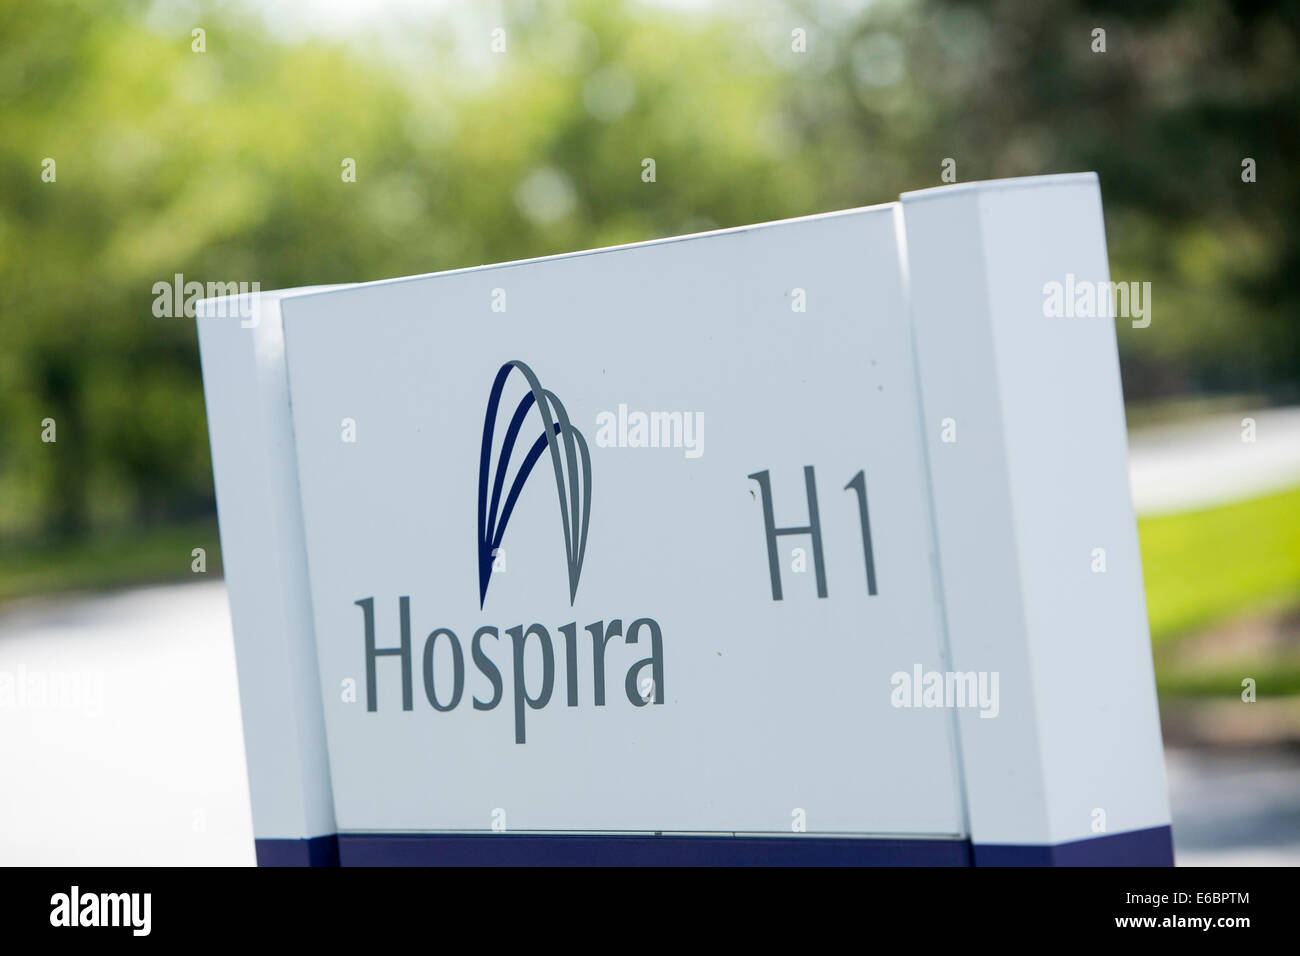 Der Hauptsitz von Healthcare-Unternehmen Hospira in Lake Forest, Illinois. Stockfoto